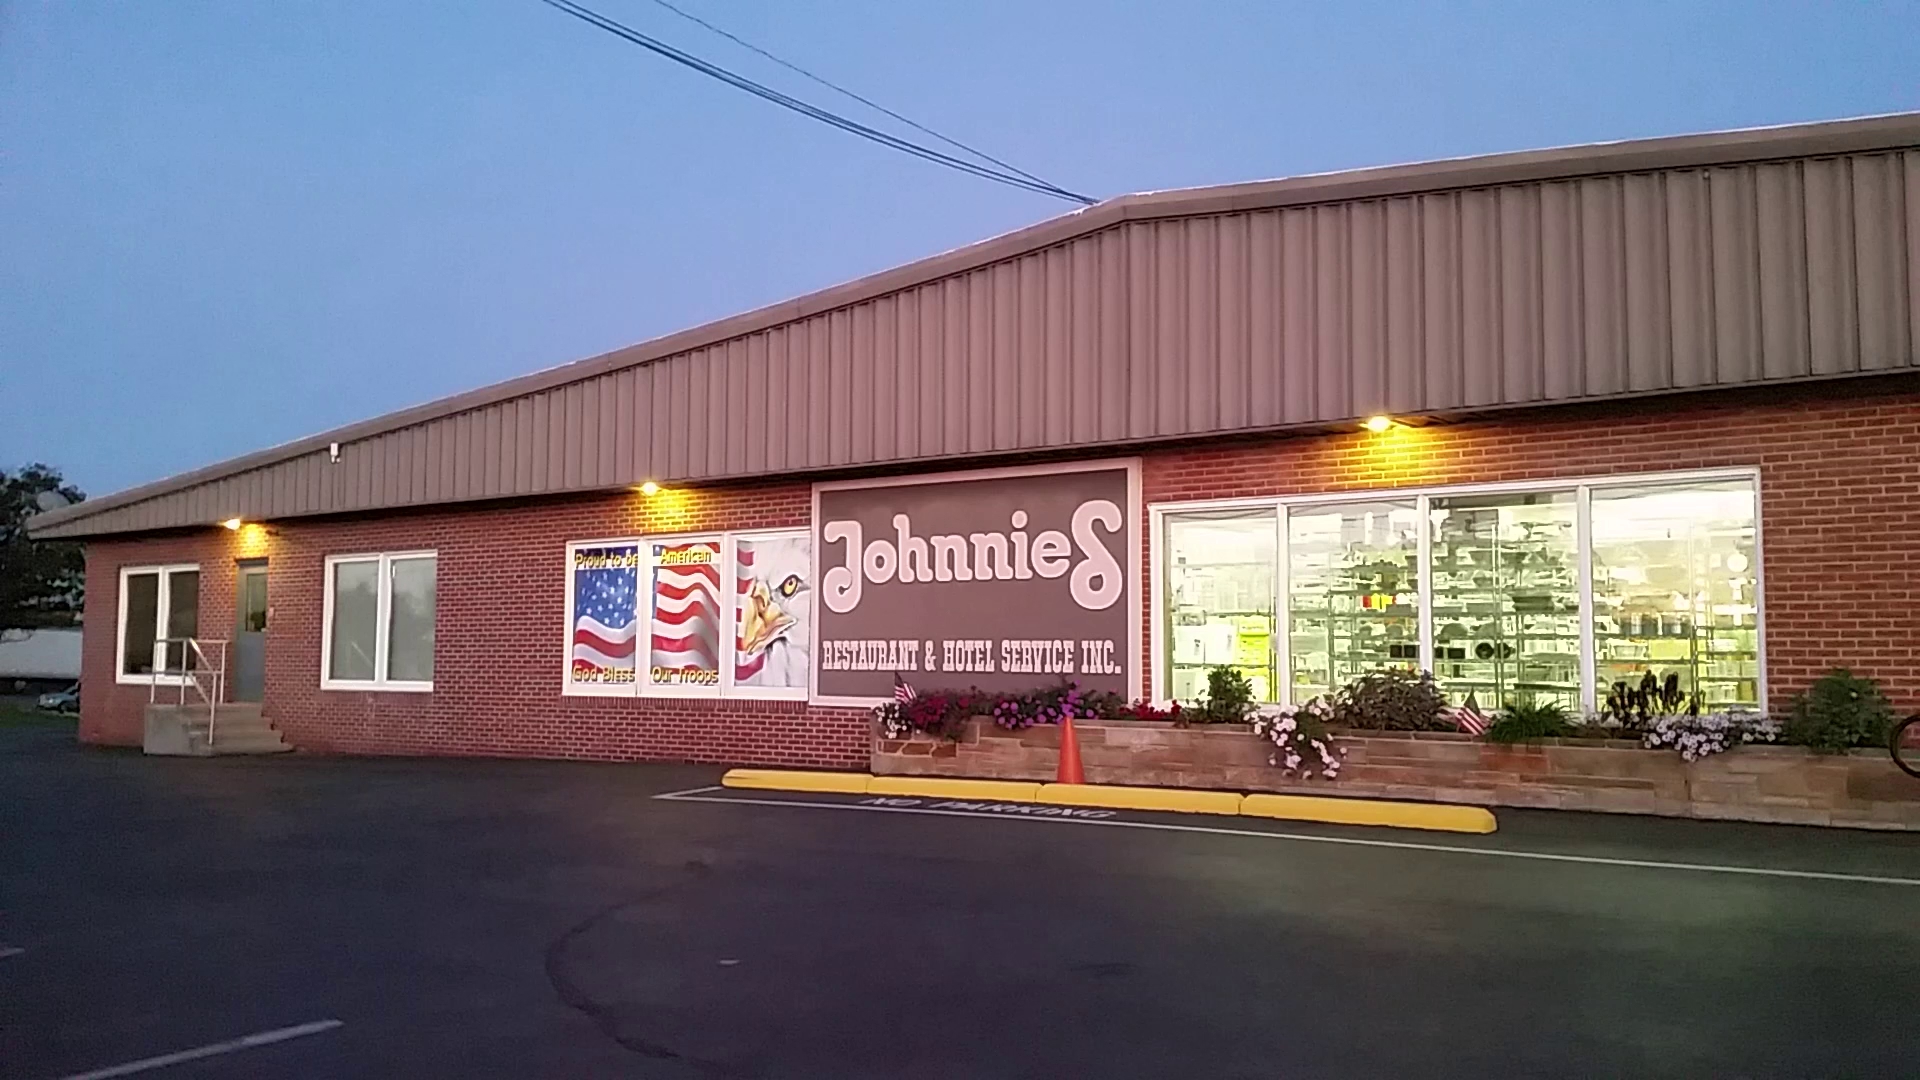 Johnnie's Restaurant & Hotel Service, Inc.